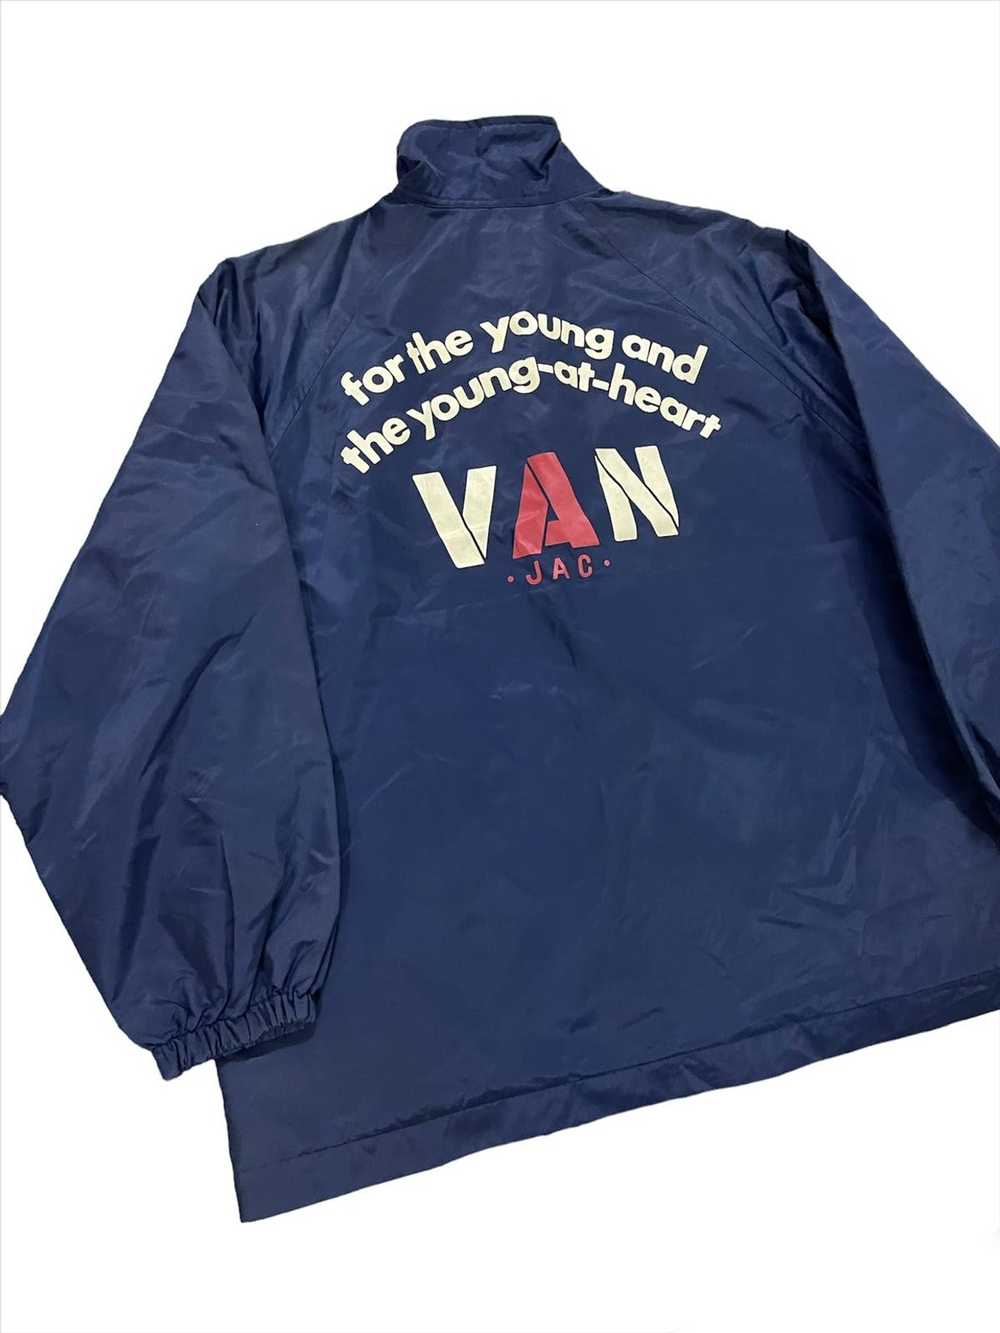 Van × Vintage Vintage Van Jac Coach Jacket - image 2